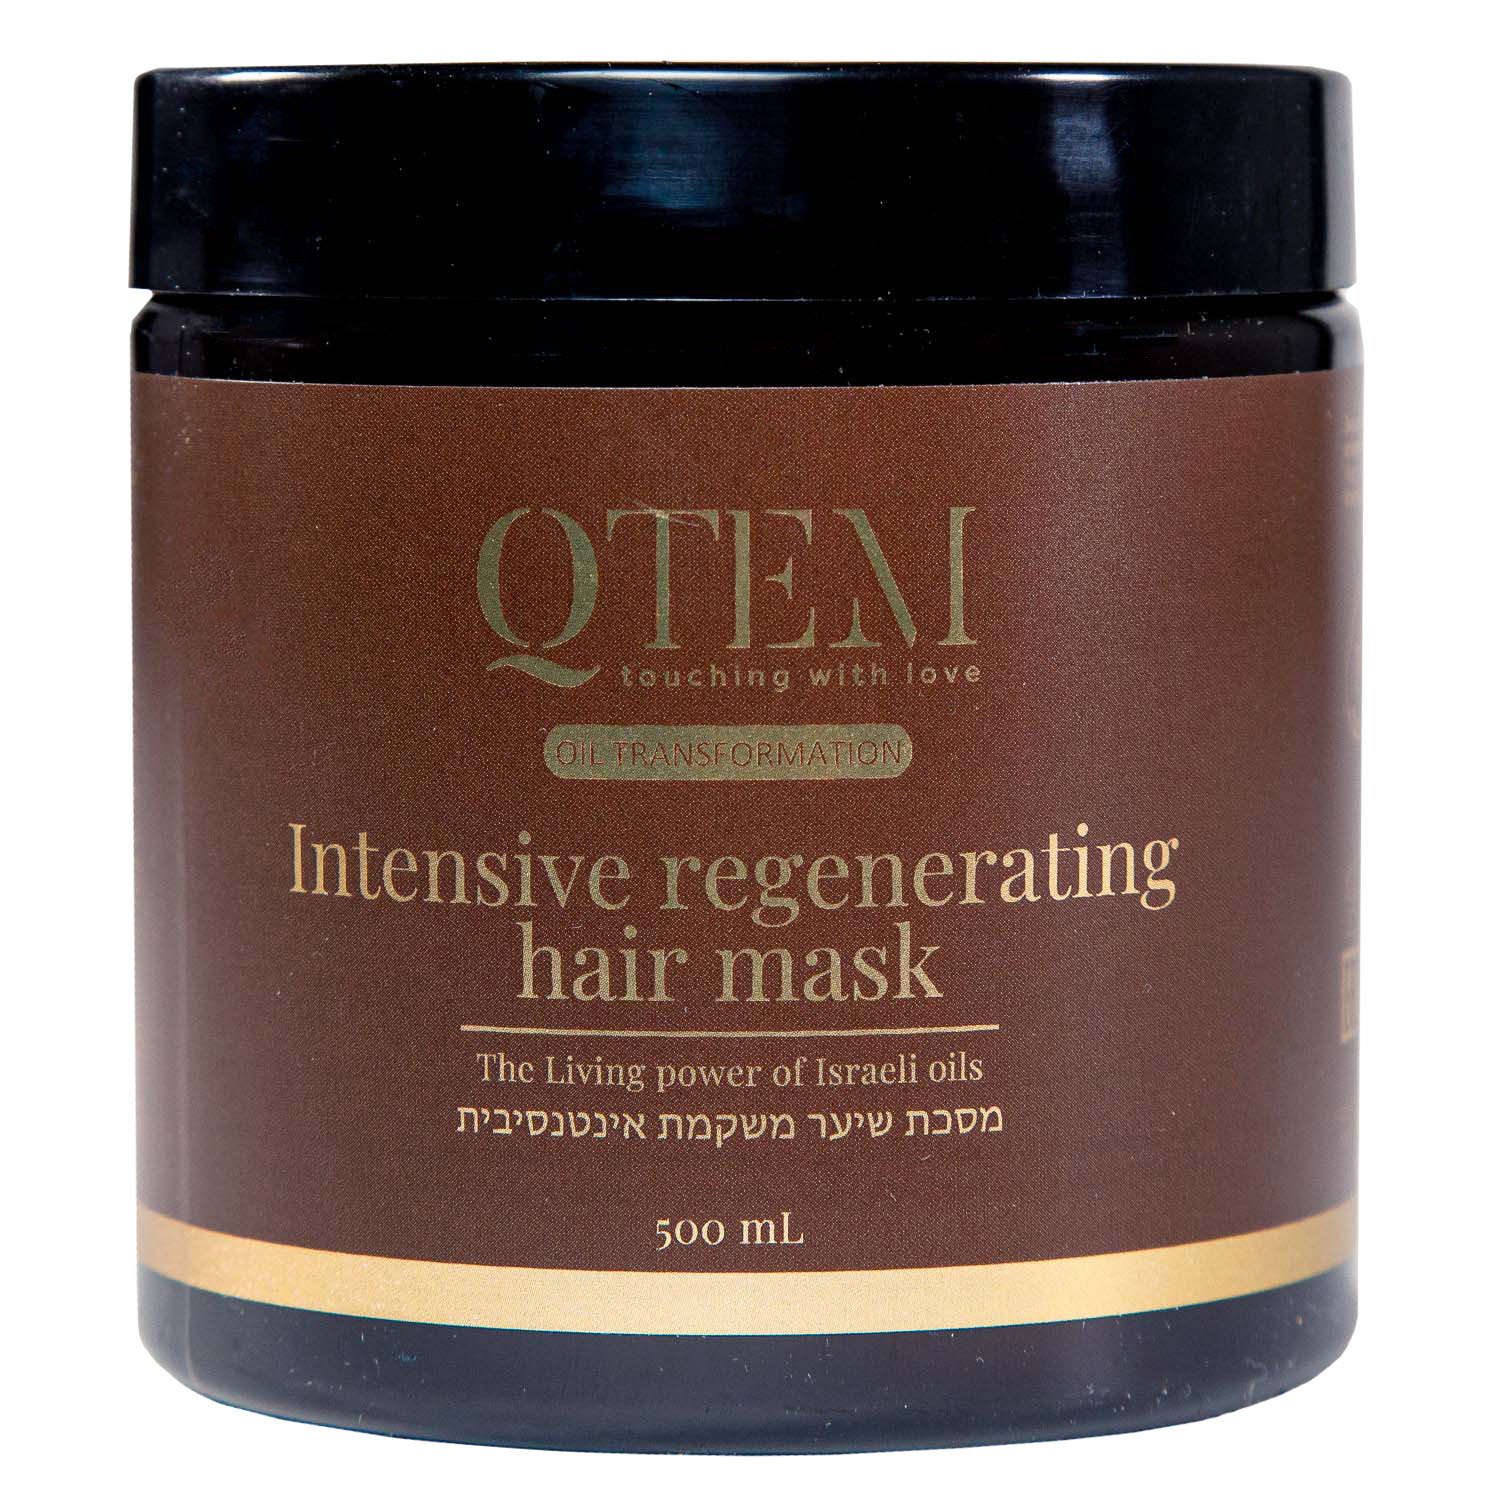 Qtem Интенсивная восстанавливающая маска для волос, 500 мл (Qtem, Oil Transformation) маска pro master для окрашенных волос dikson с аргановым маслом и витамином е 1000 мл